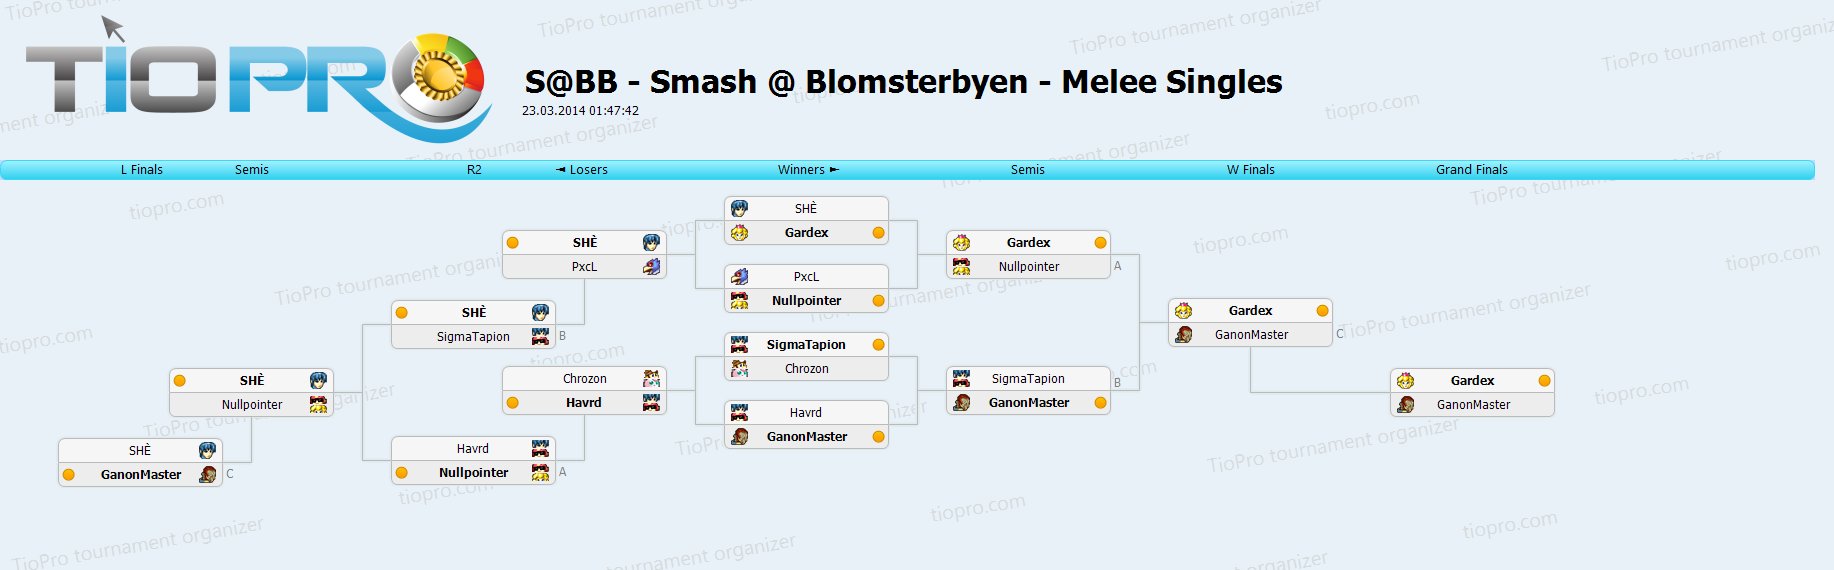 Smash @ Blomsterbyen - Melee